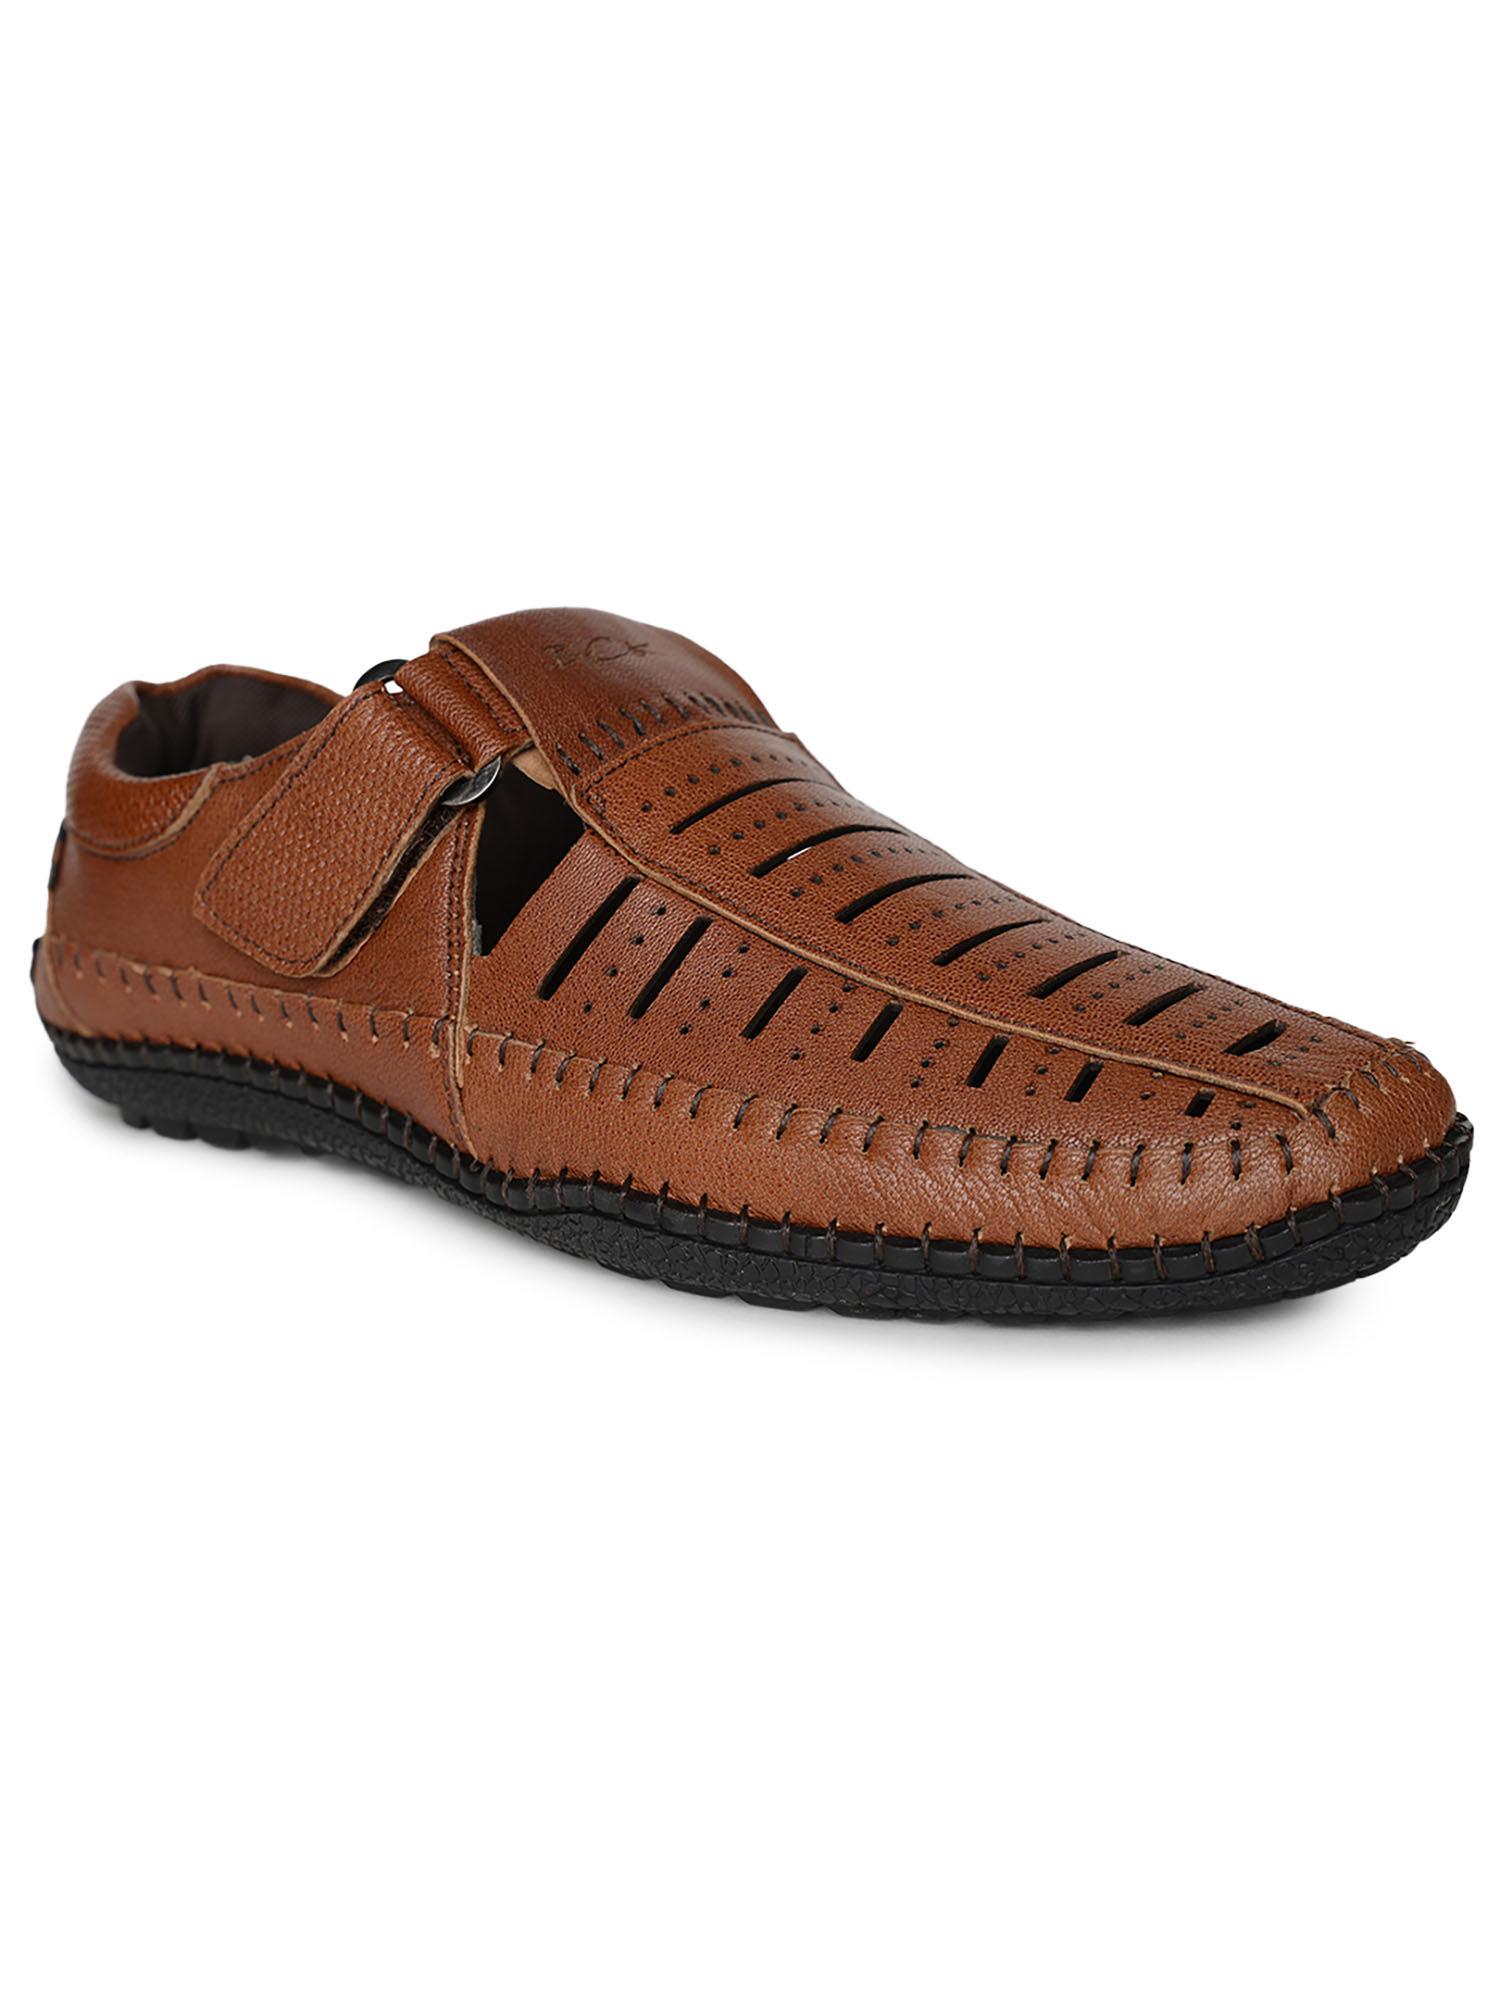 brak full grain natural leather casual open sandals tan